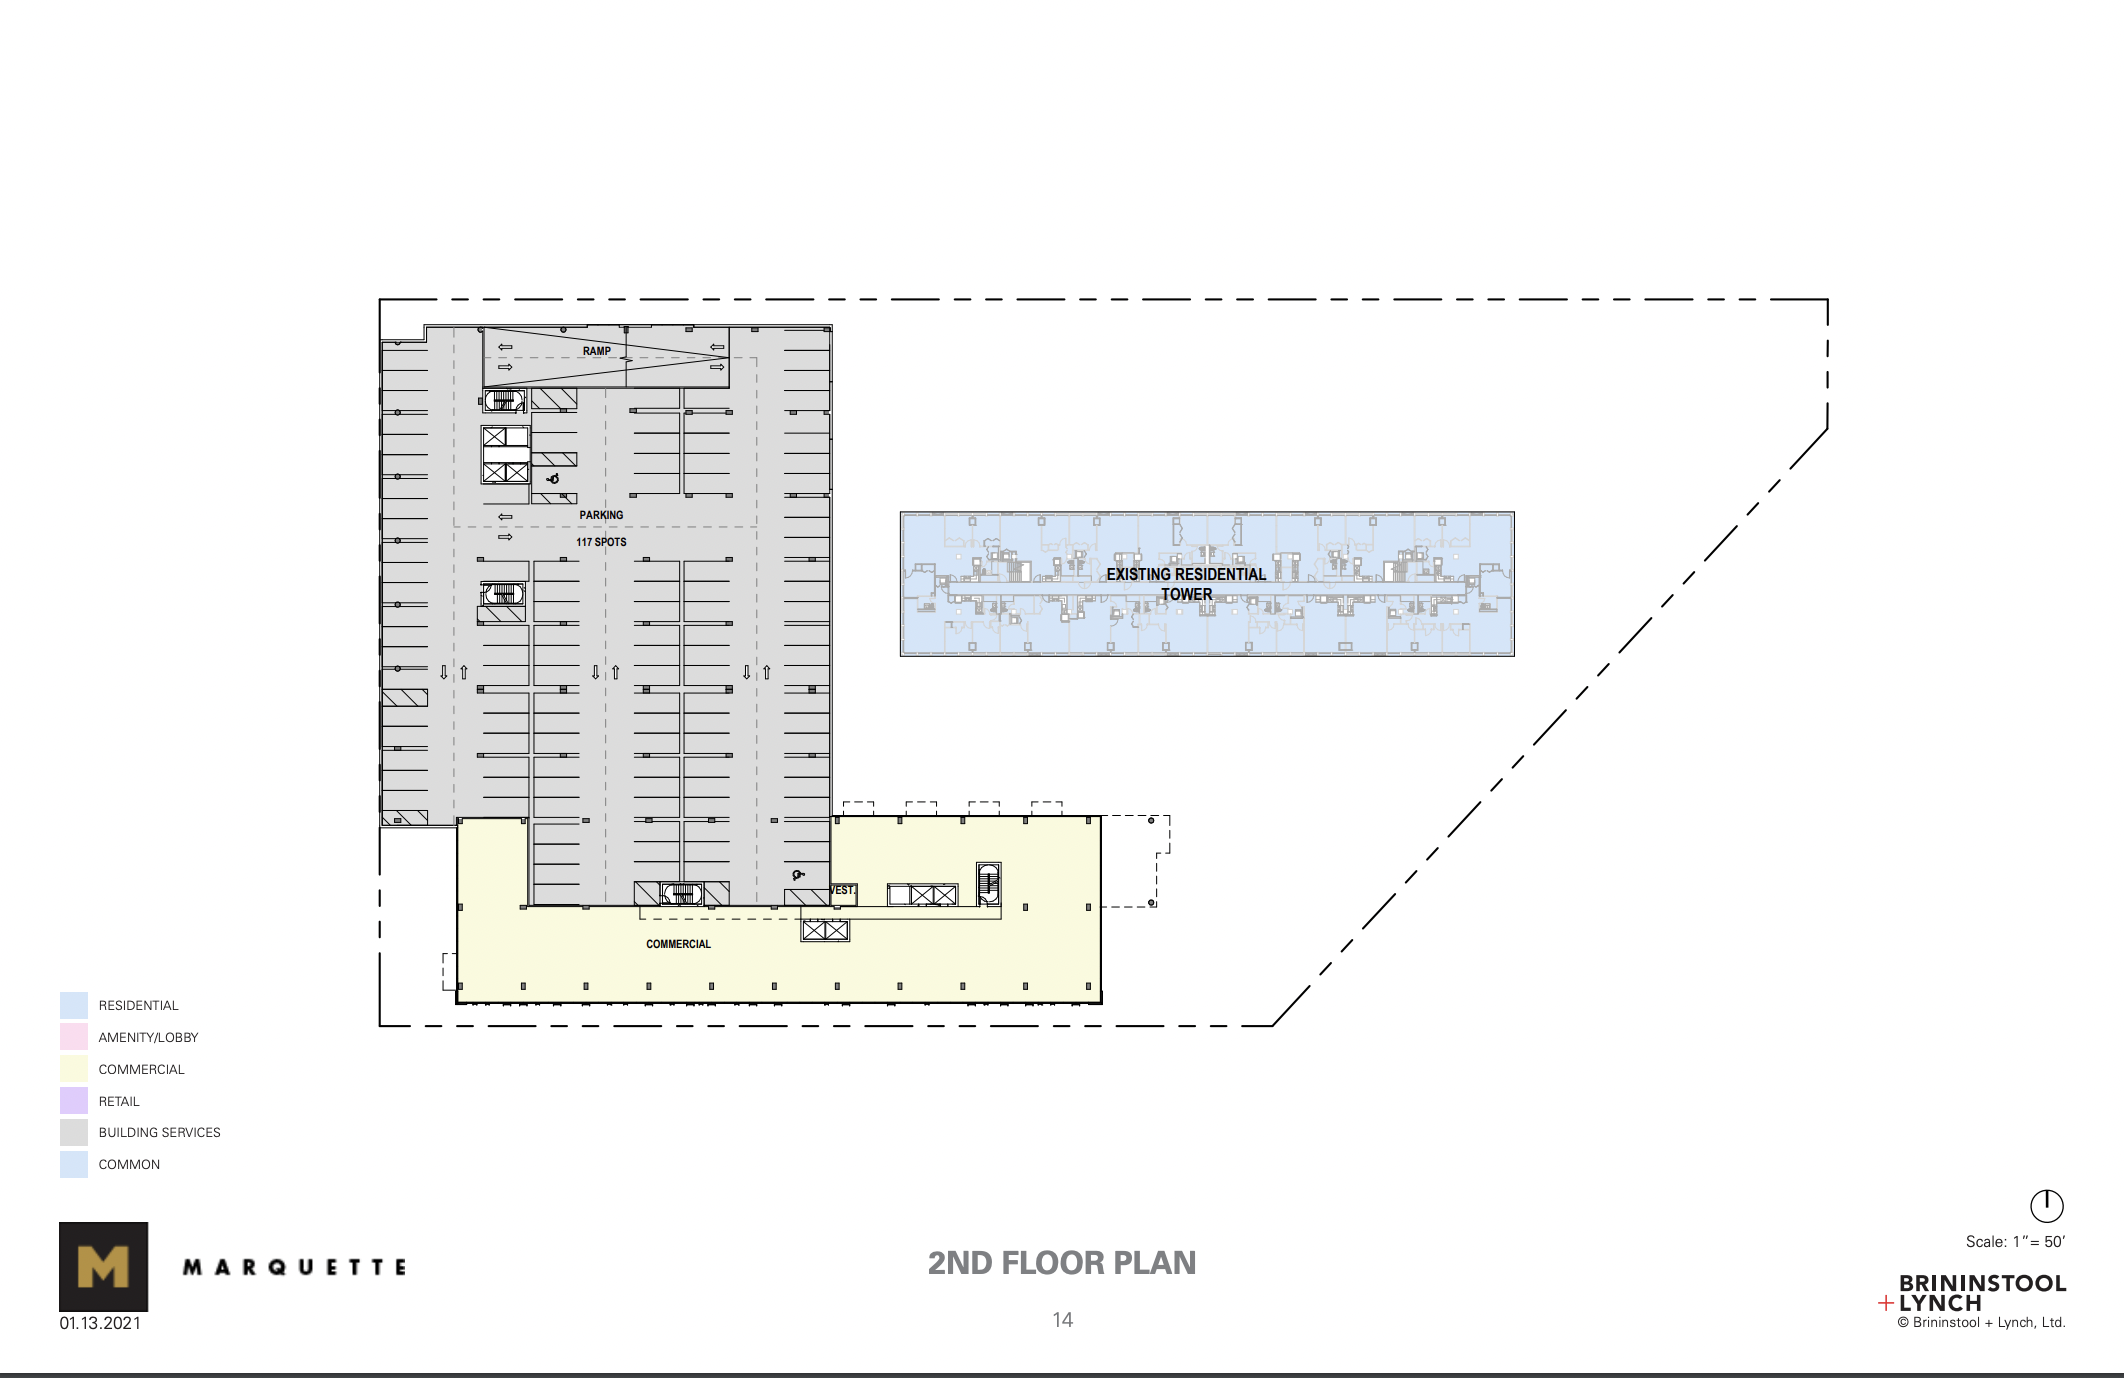 Second floor in master plan (513 S Damen Avenue in upper left)